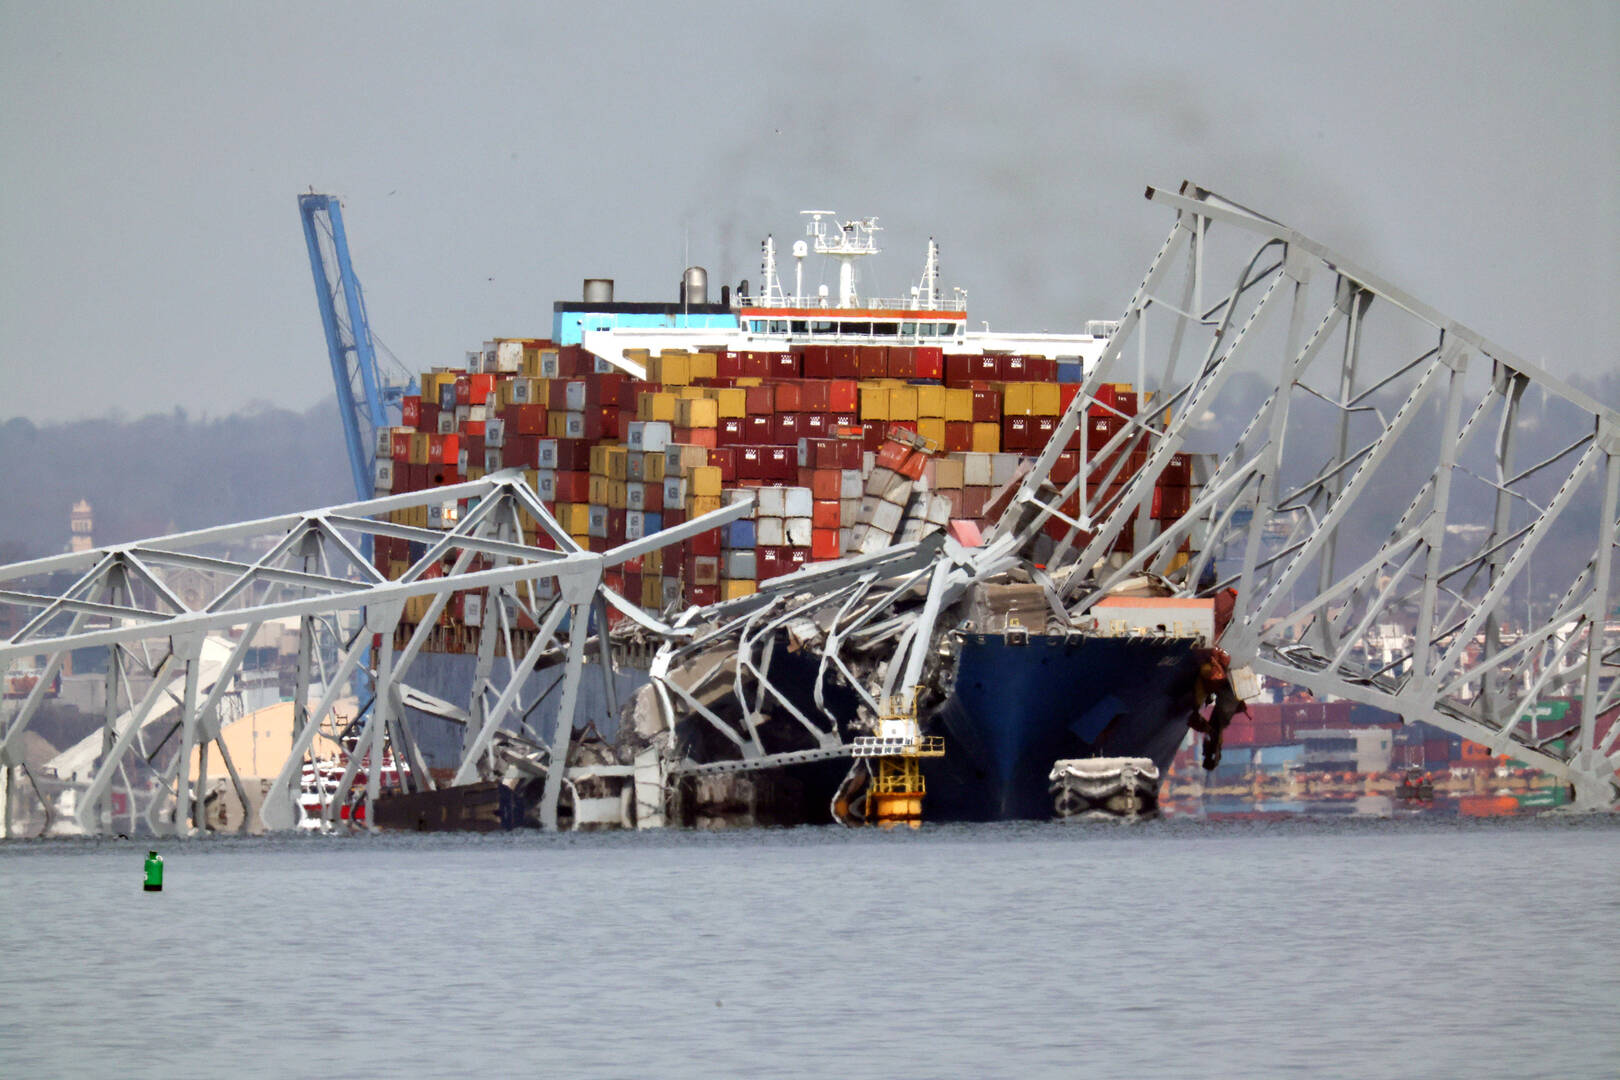 وسائل إعلام: قبطان السفينة التي صدمت جسرا في بالتيمور الأمريكية قد يكون أوكرانيا